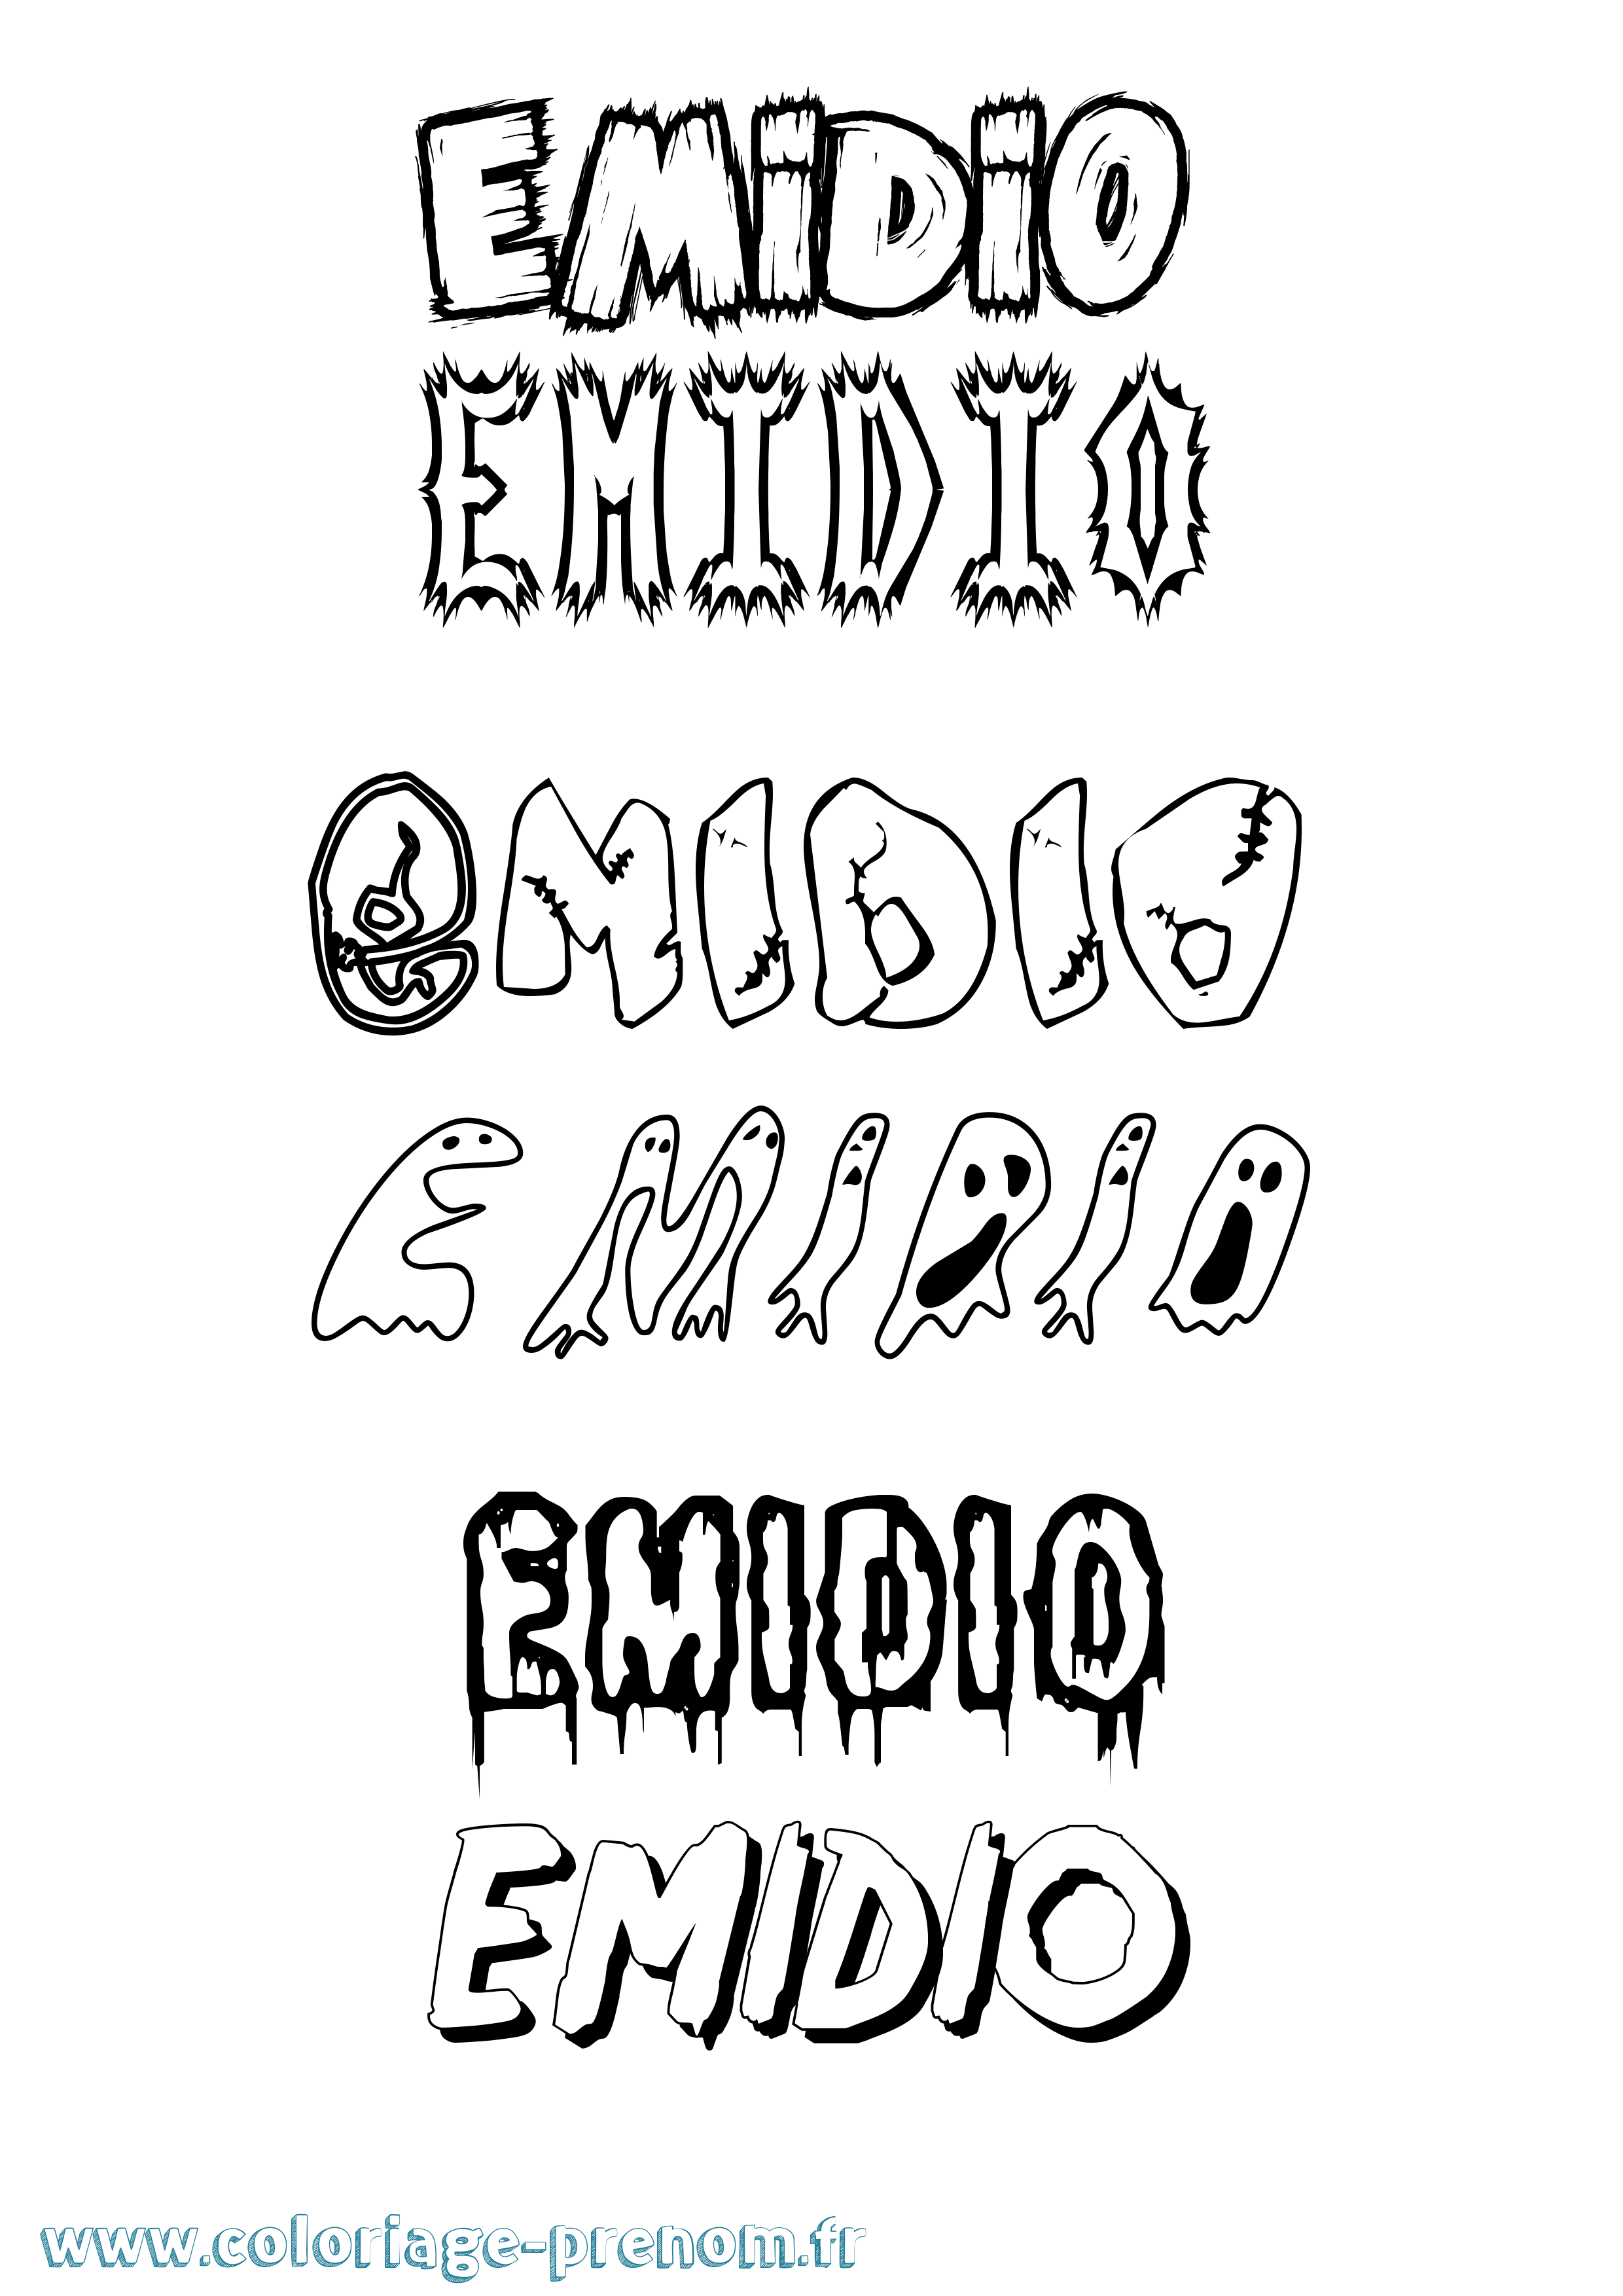 Coloriage prénom Emidio Frisson